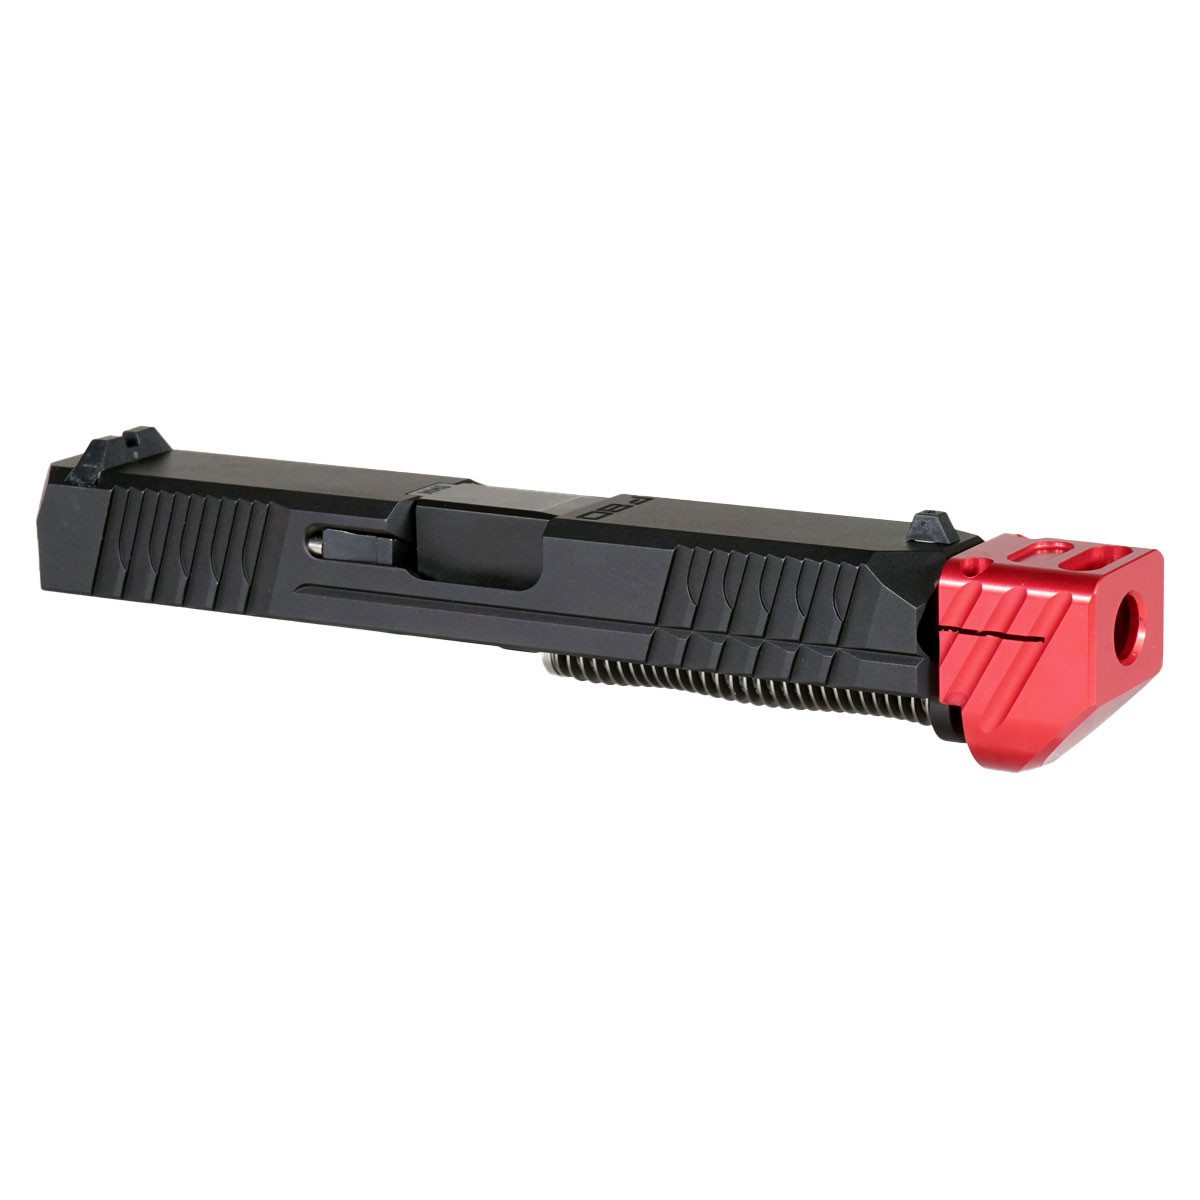 DDS 'Paracausal V3 w/ Red Compensator' 9mm Complete Slide Kit - Glock 19 Gen 1-3 Compatible